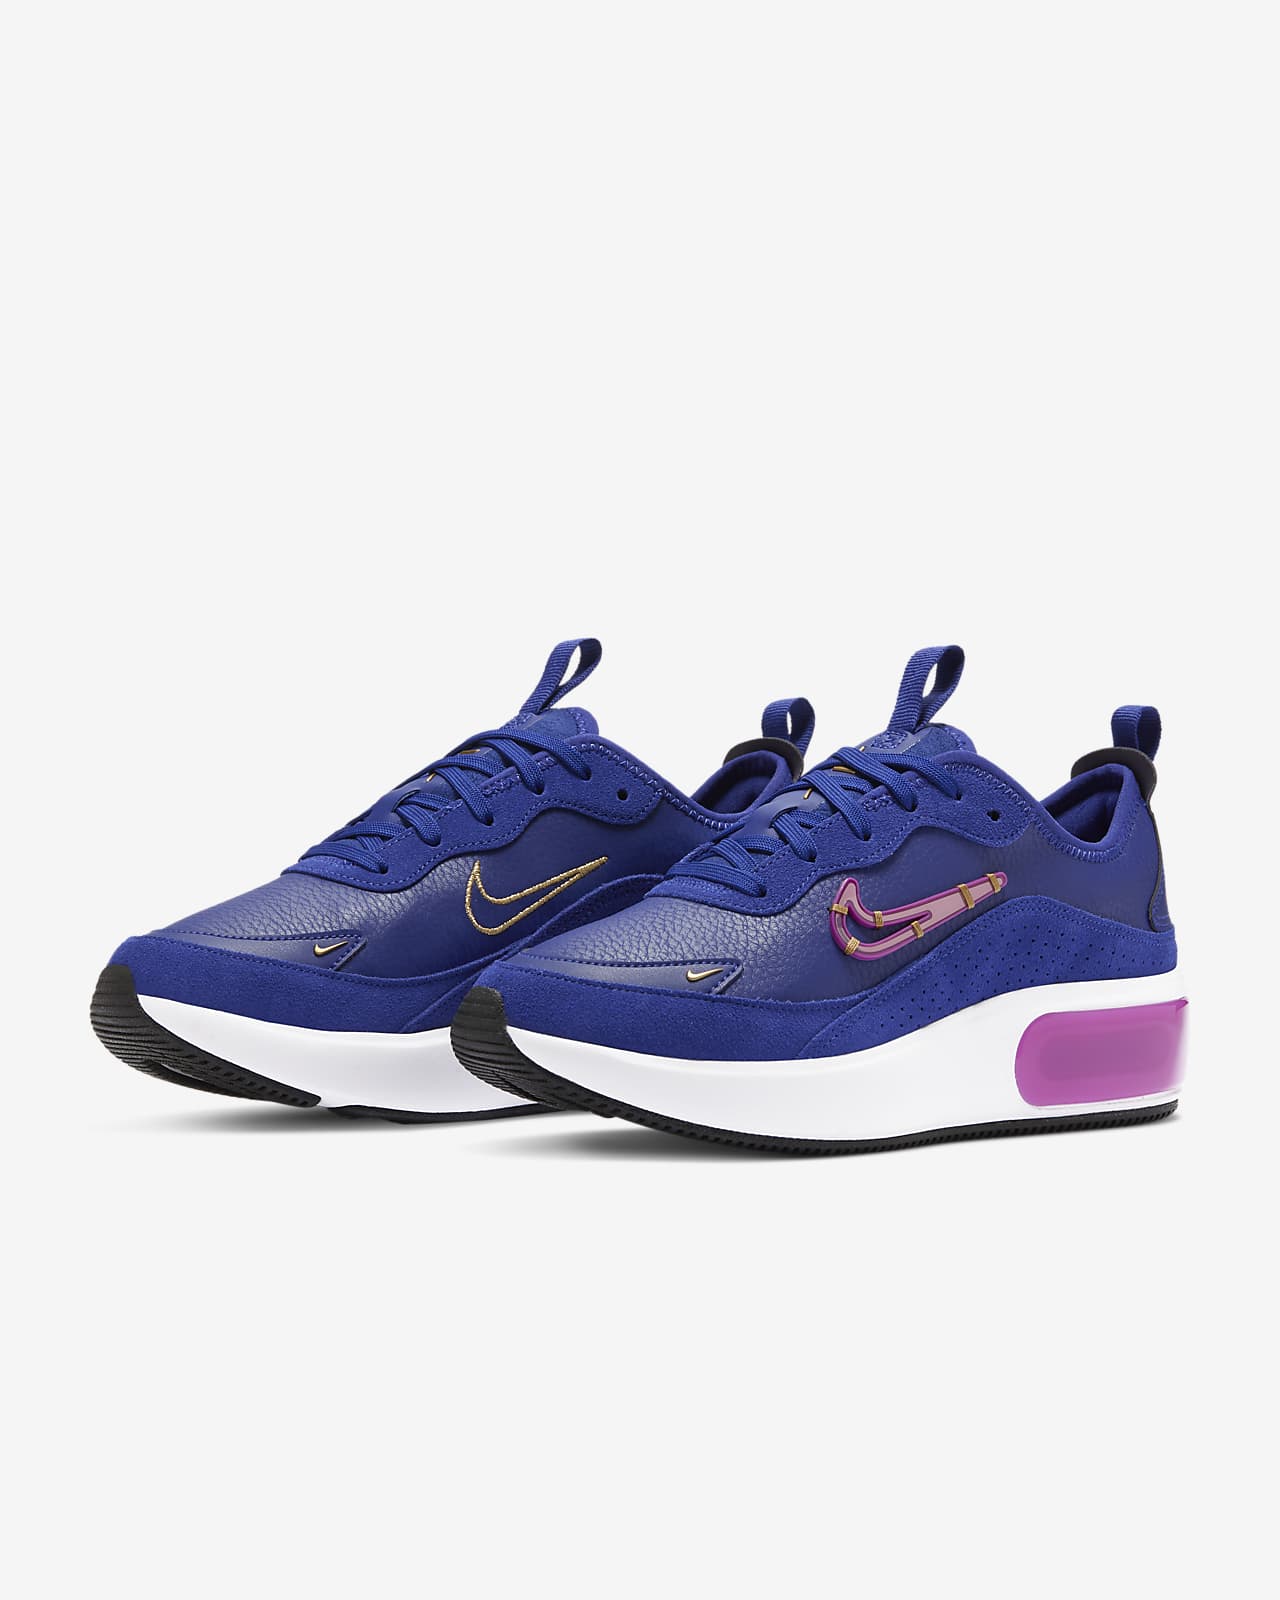 deep purple nike shoes